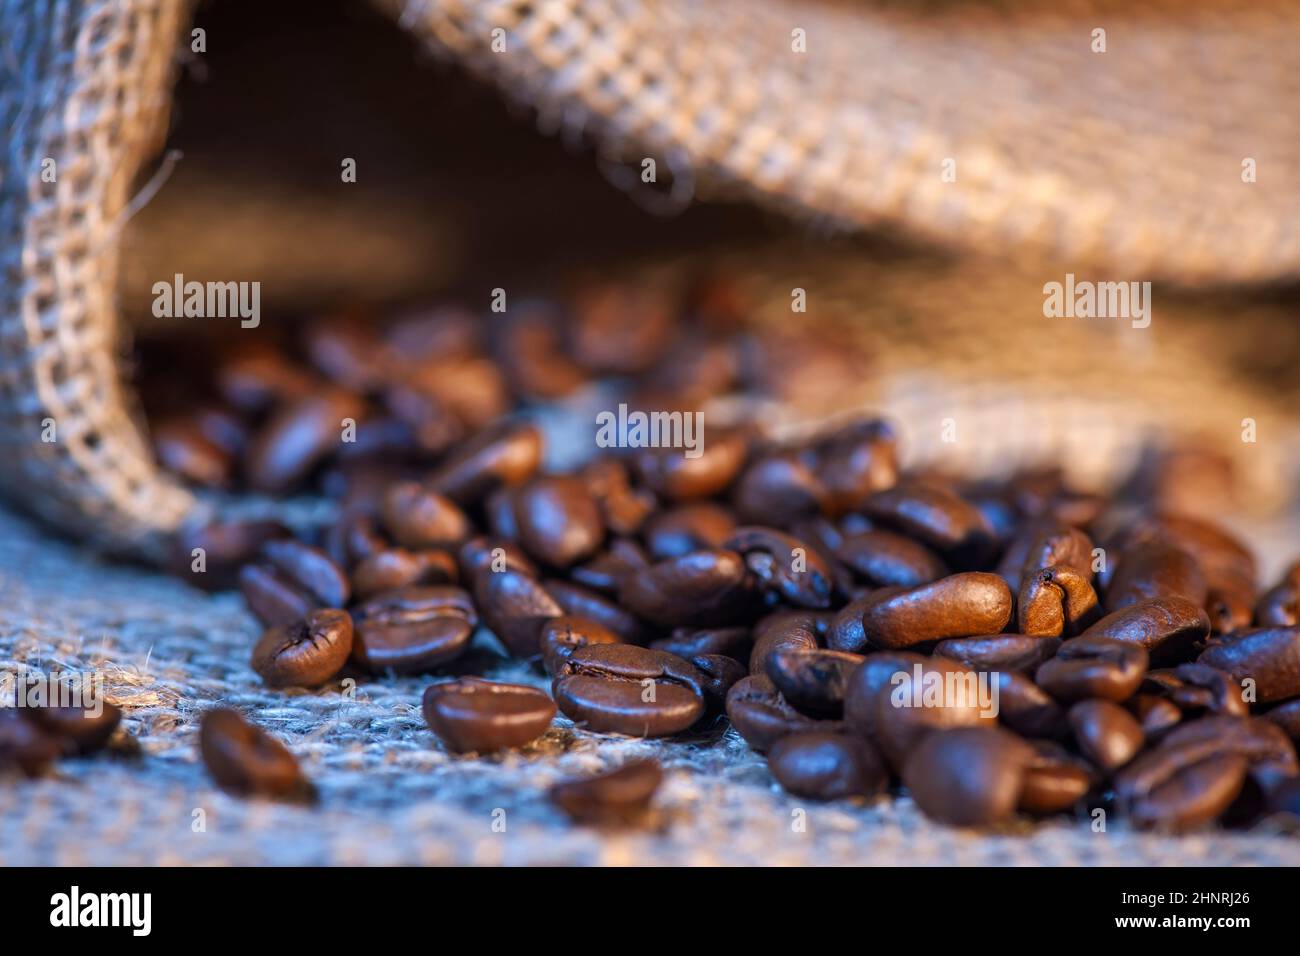 Gros plan de grains de café fraîchement torréfiés saupoudés d'un sac de toile de jute. Banque D'Images